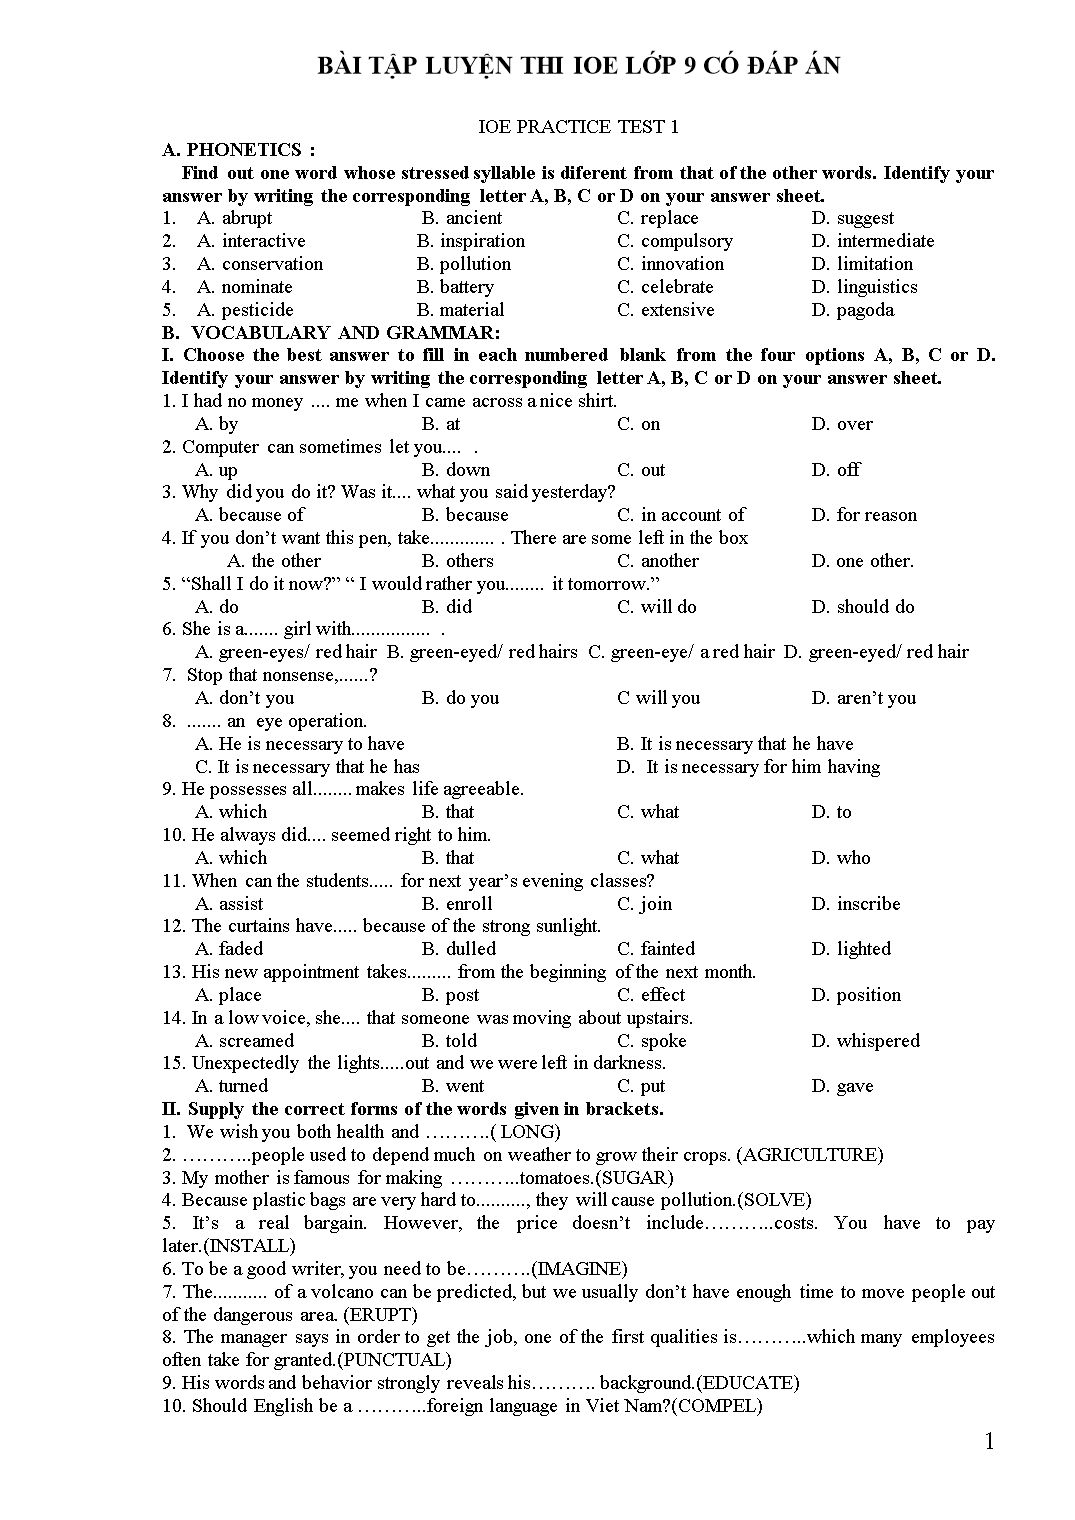 Bài tập luyện thi IOE lớp 9 (Có đáp án) trang 1